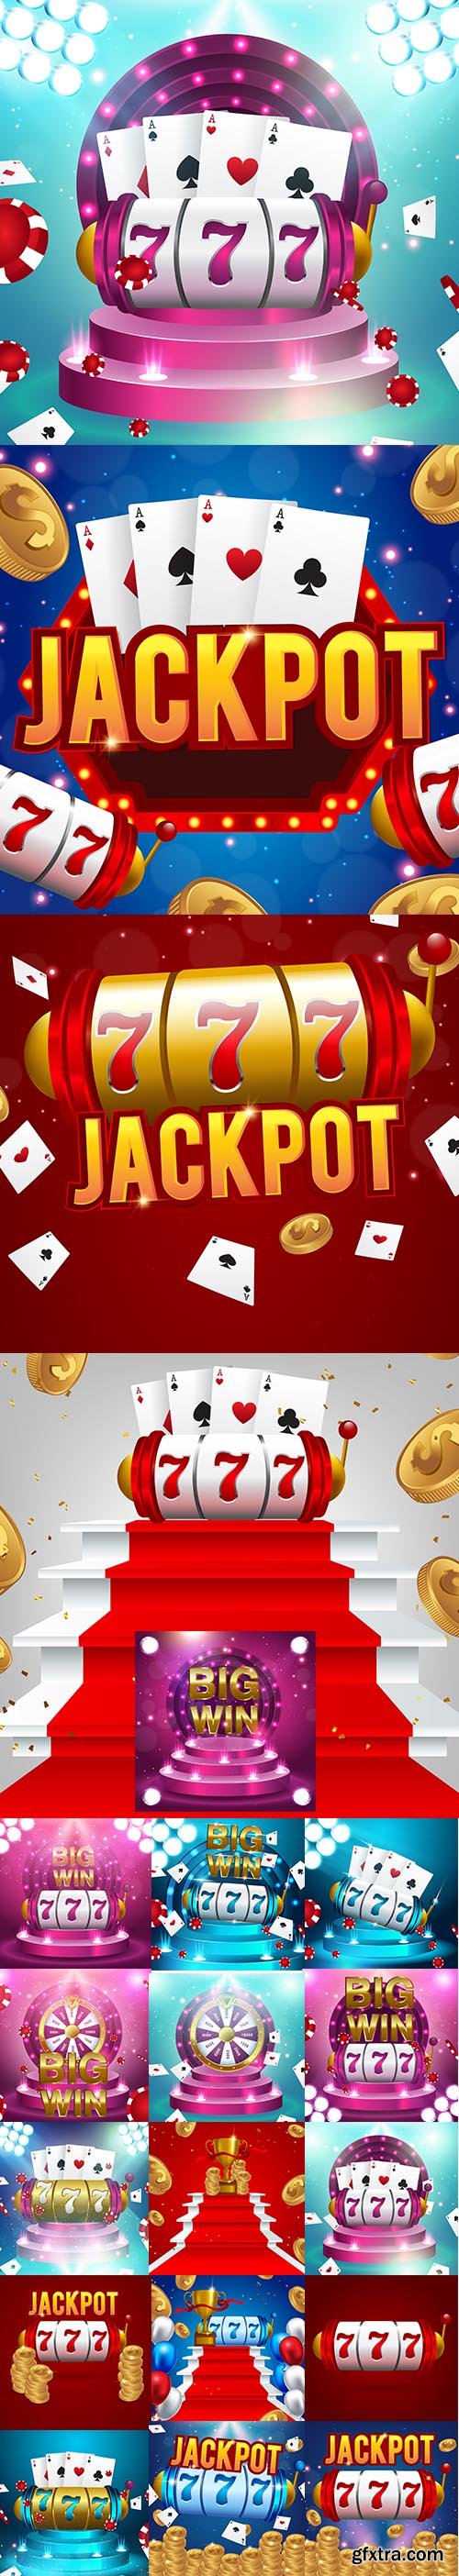 Big Win Slots 777 Banner Casino Concept Set